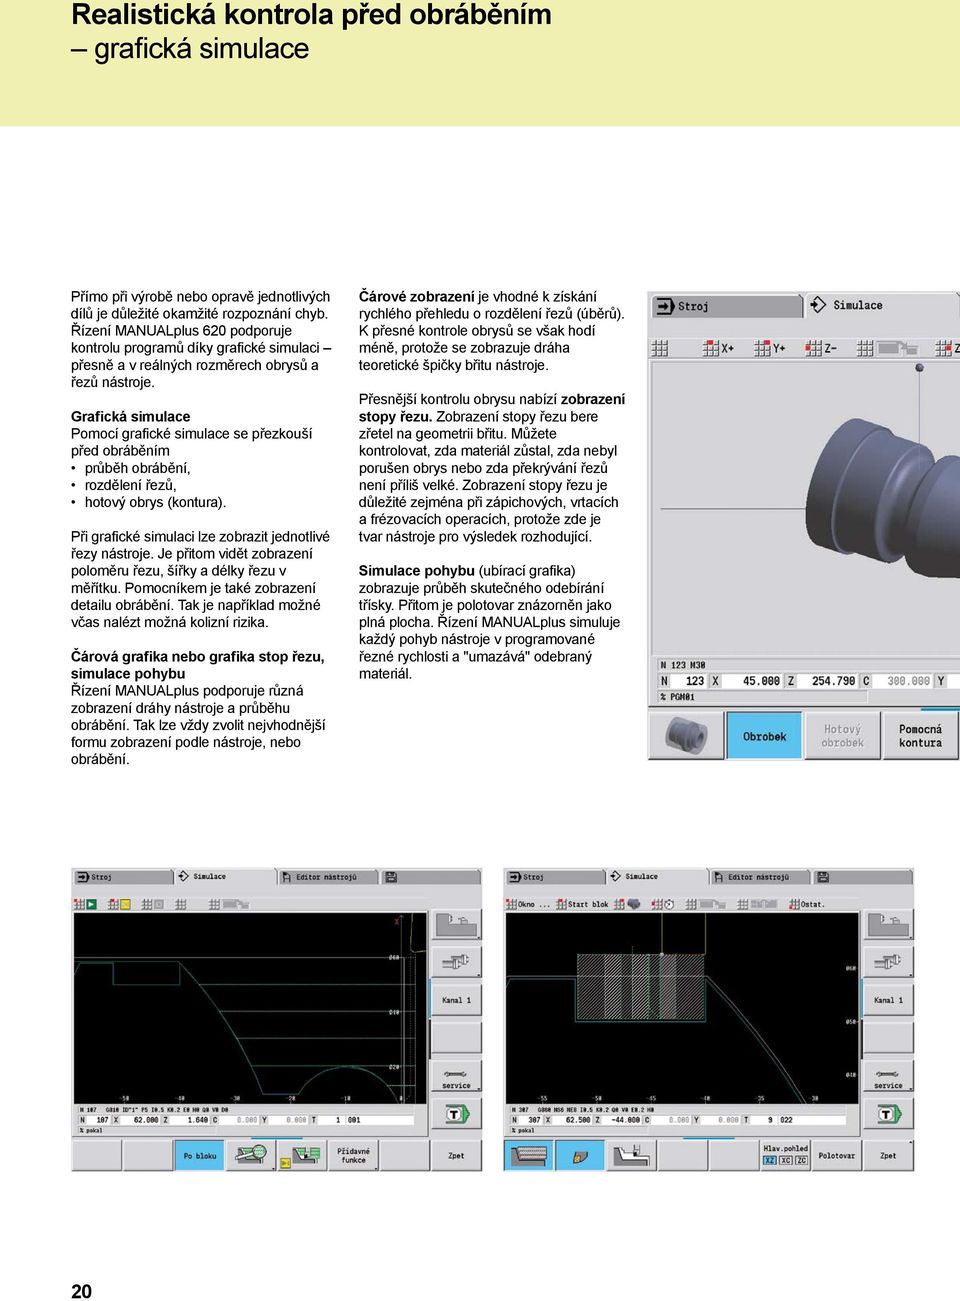 Grafická simulace Pomocí grafické simulace se přezkouší před obráběním průběh obrábění, rozdělení řezů, hotový obrys (kontura). Při grafické simulaci lze zobrazit jednotlivé řezy nástroje.